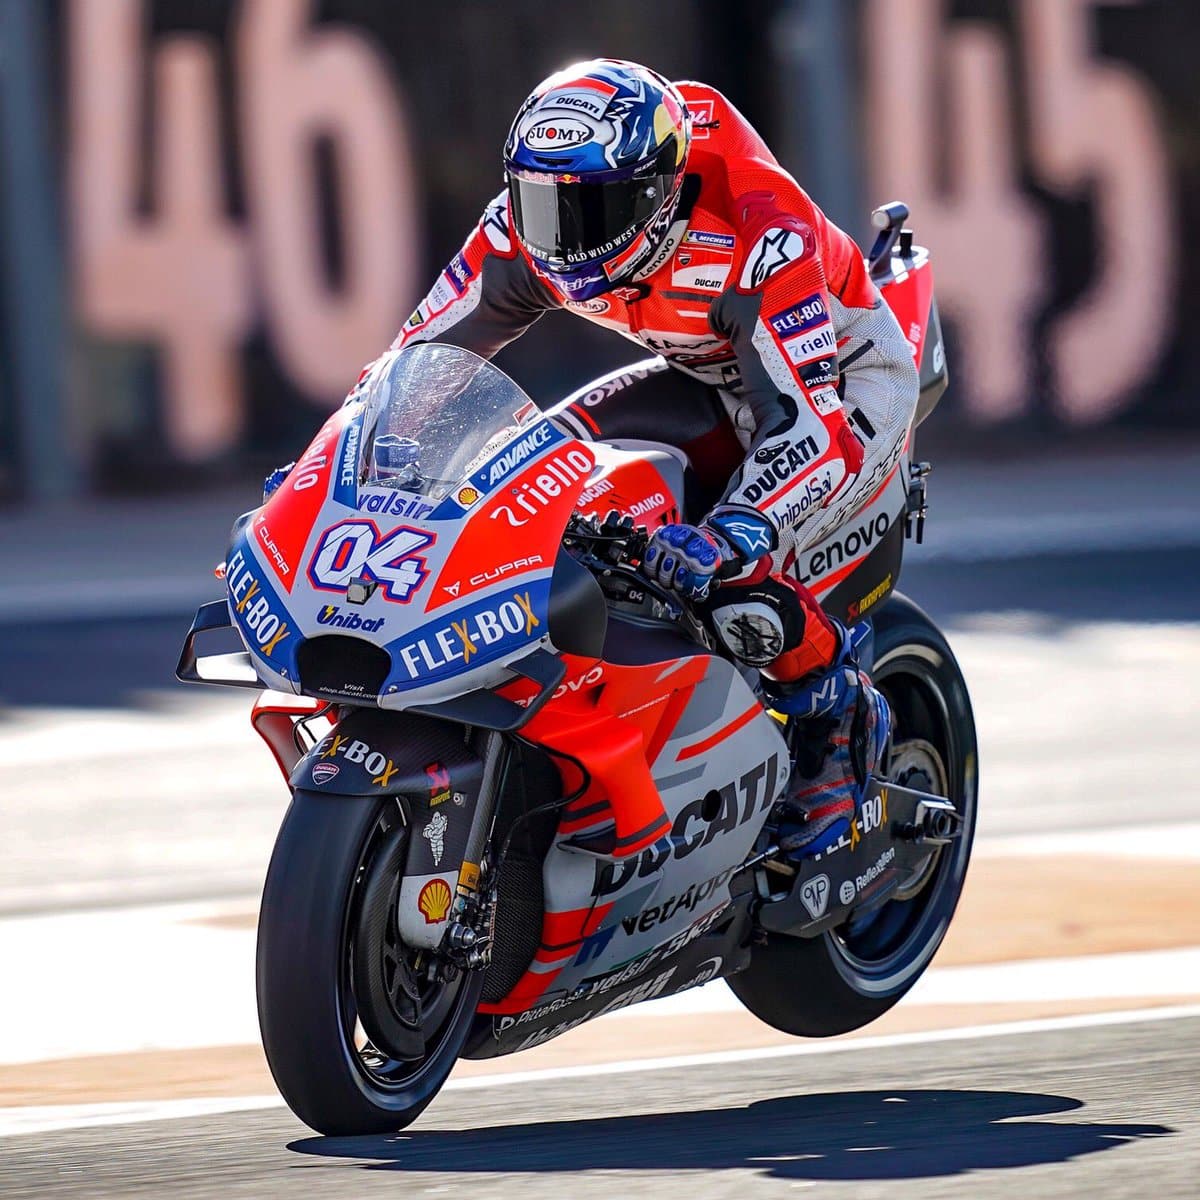 MotoGP 2019, Andrea Dovizioso: “em 6 anos de colaboração, a Ducati e eu nunca cometemos erros”.